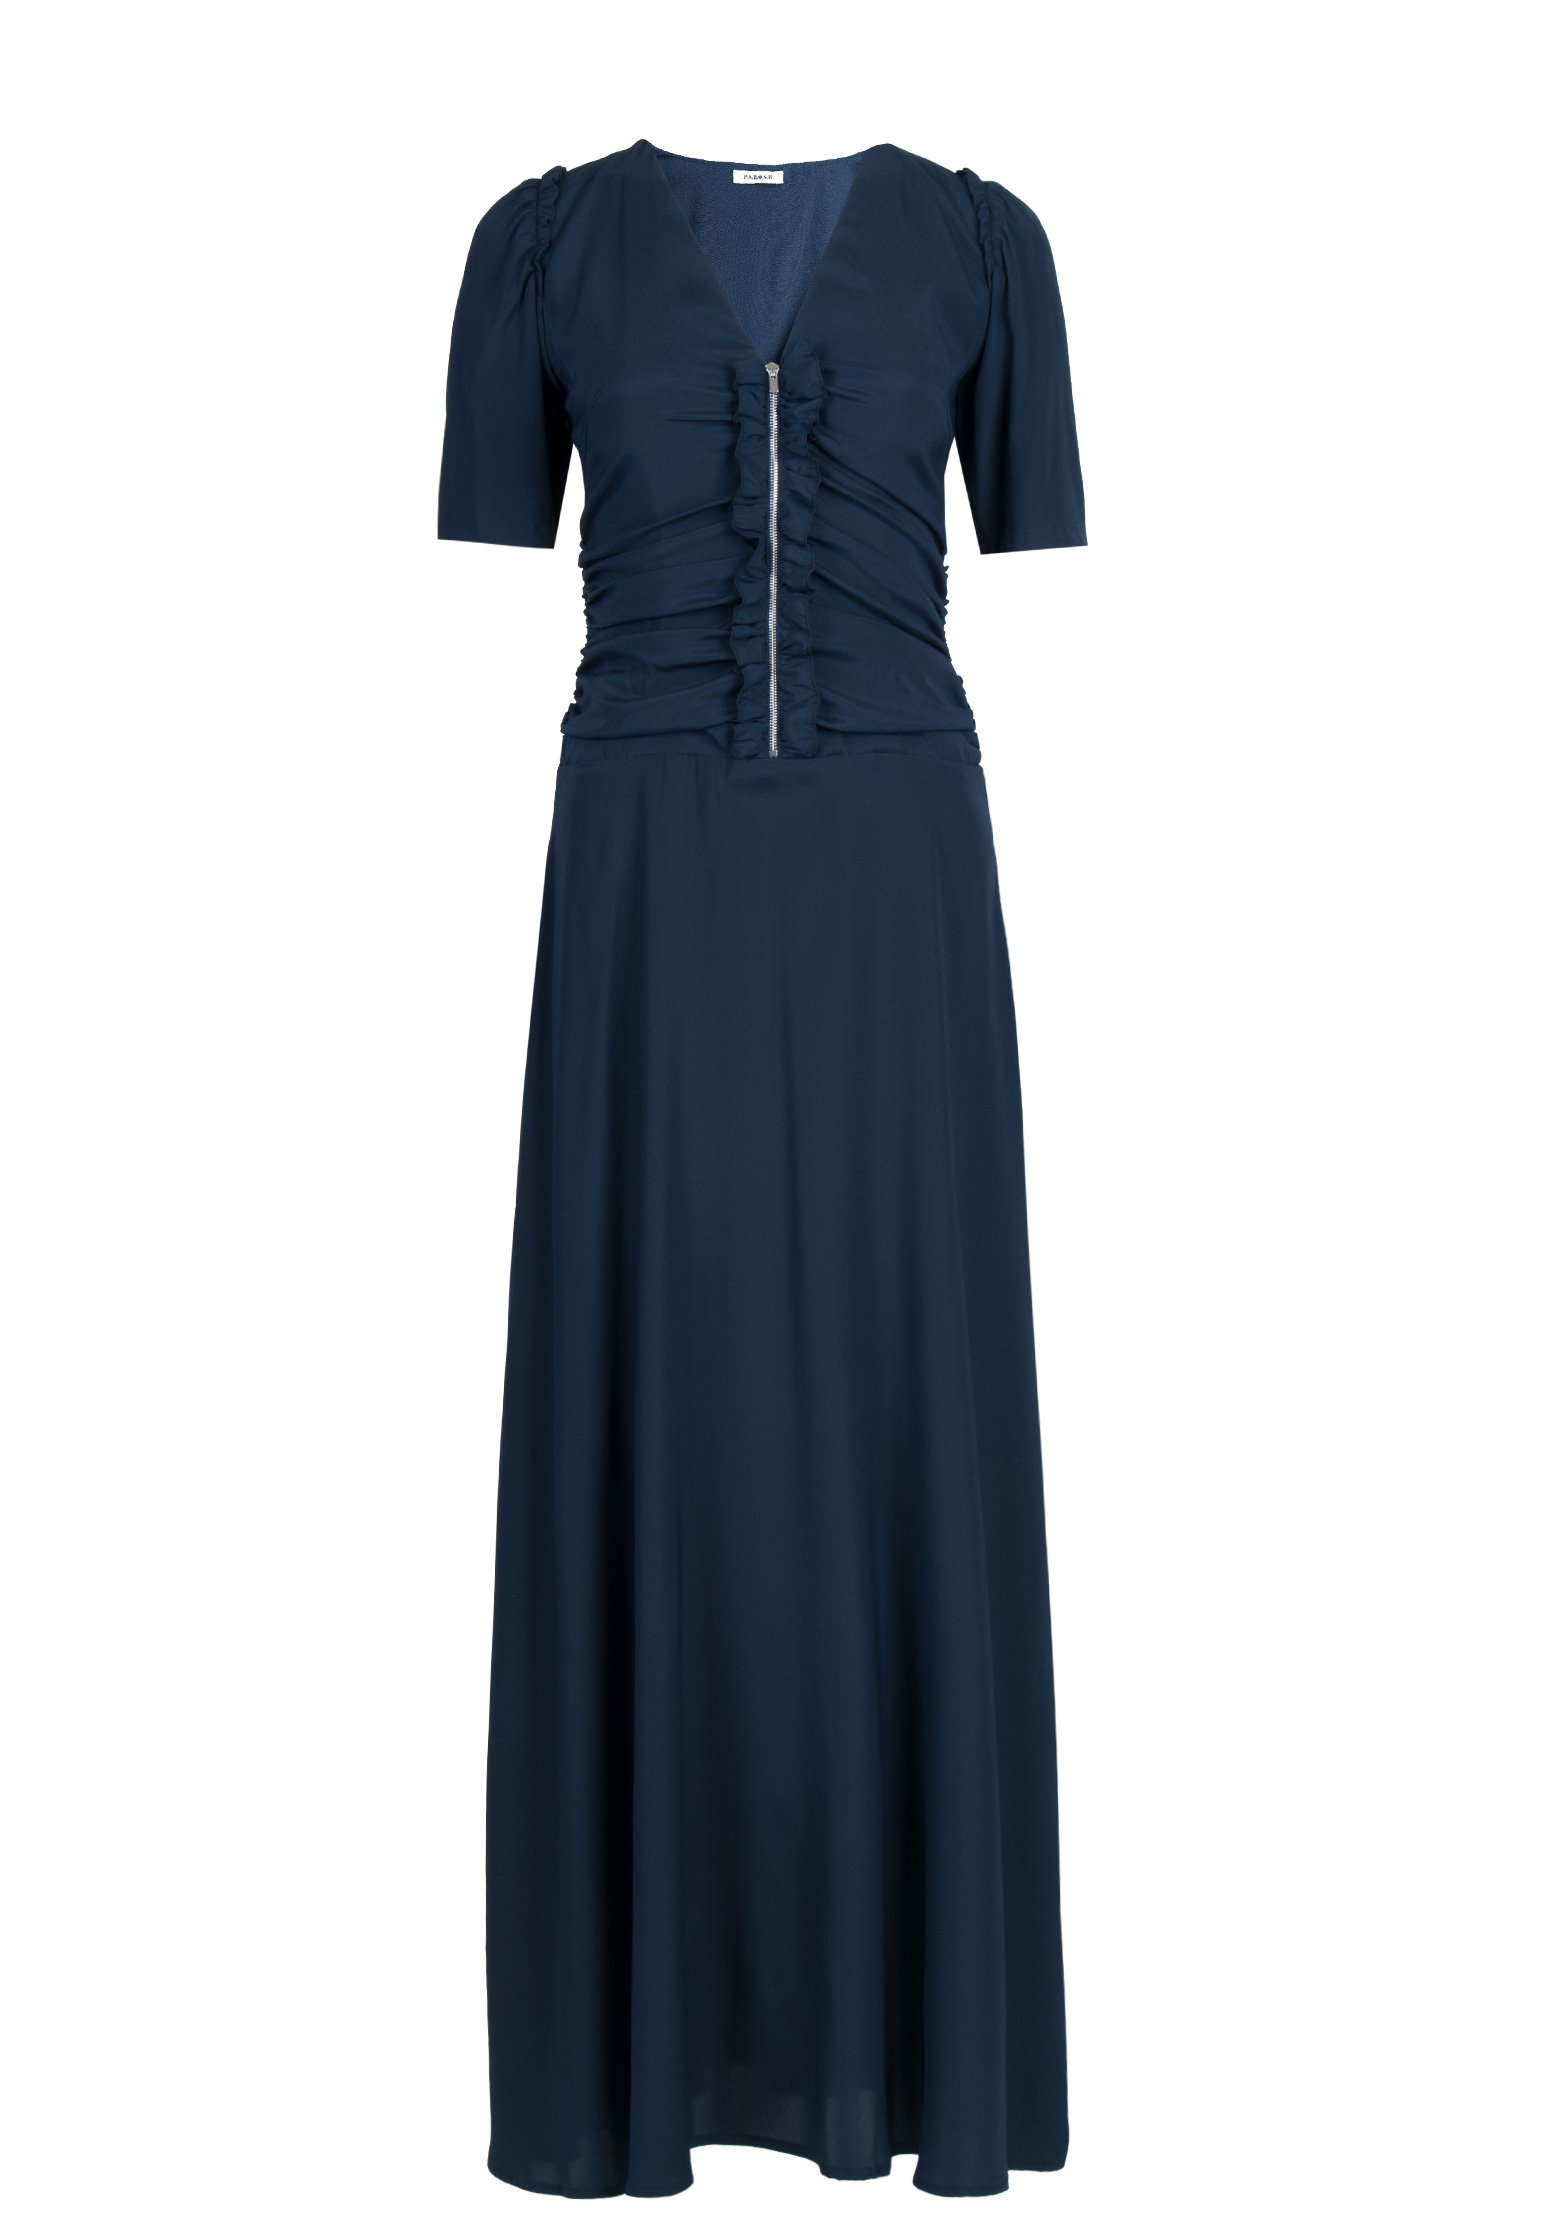 Платье женское P.A.R.O.S.H. 113152 синее M